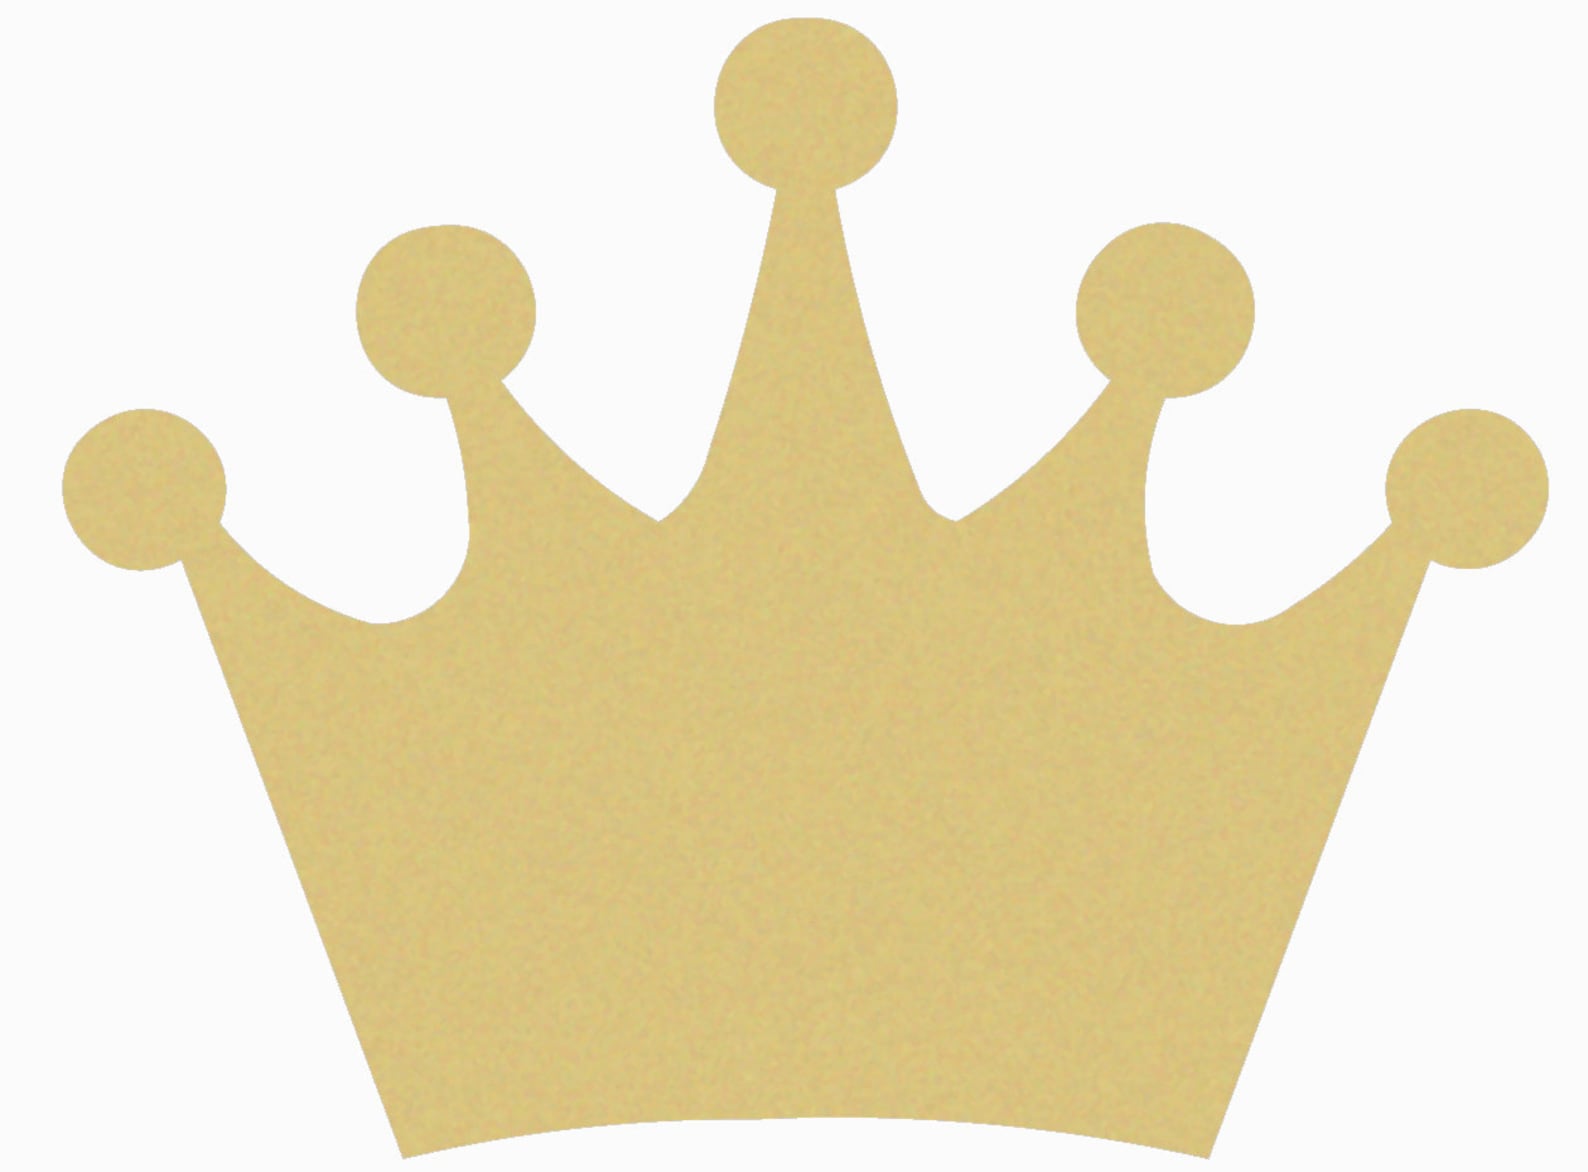 Корона для королевы своими руками из бумаги трафарет: как сделать своими руками изысканный аксессуар для ребенка. Королевская корона из кружева